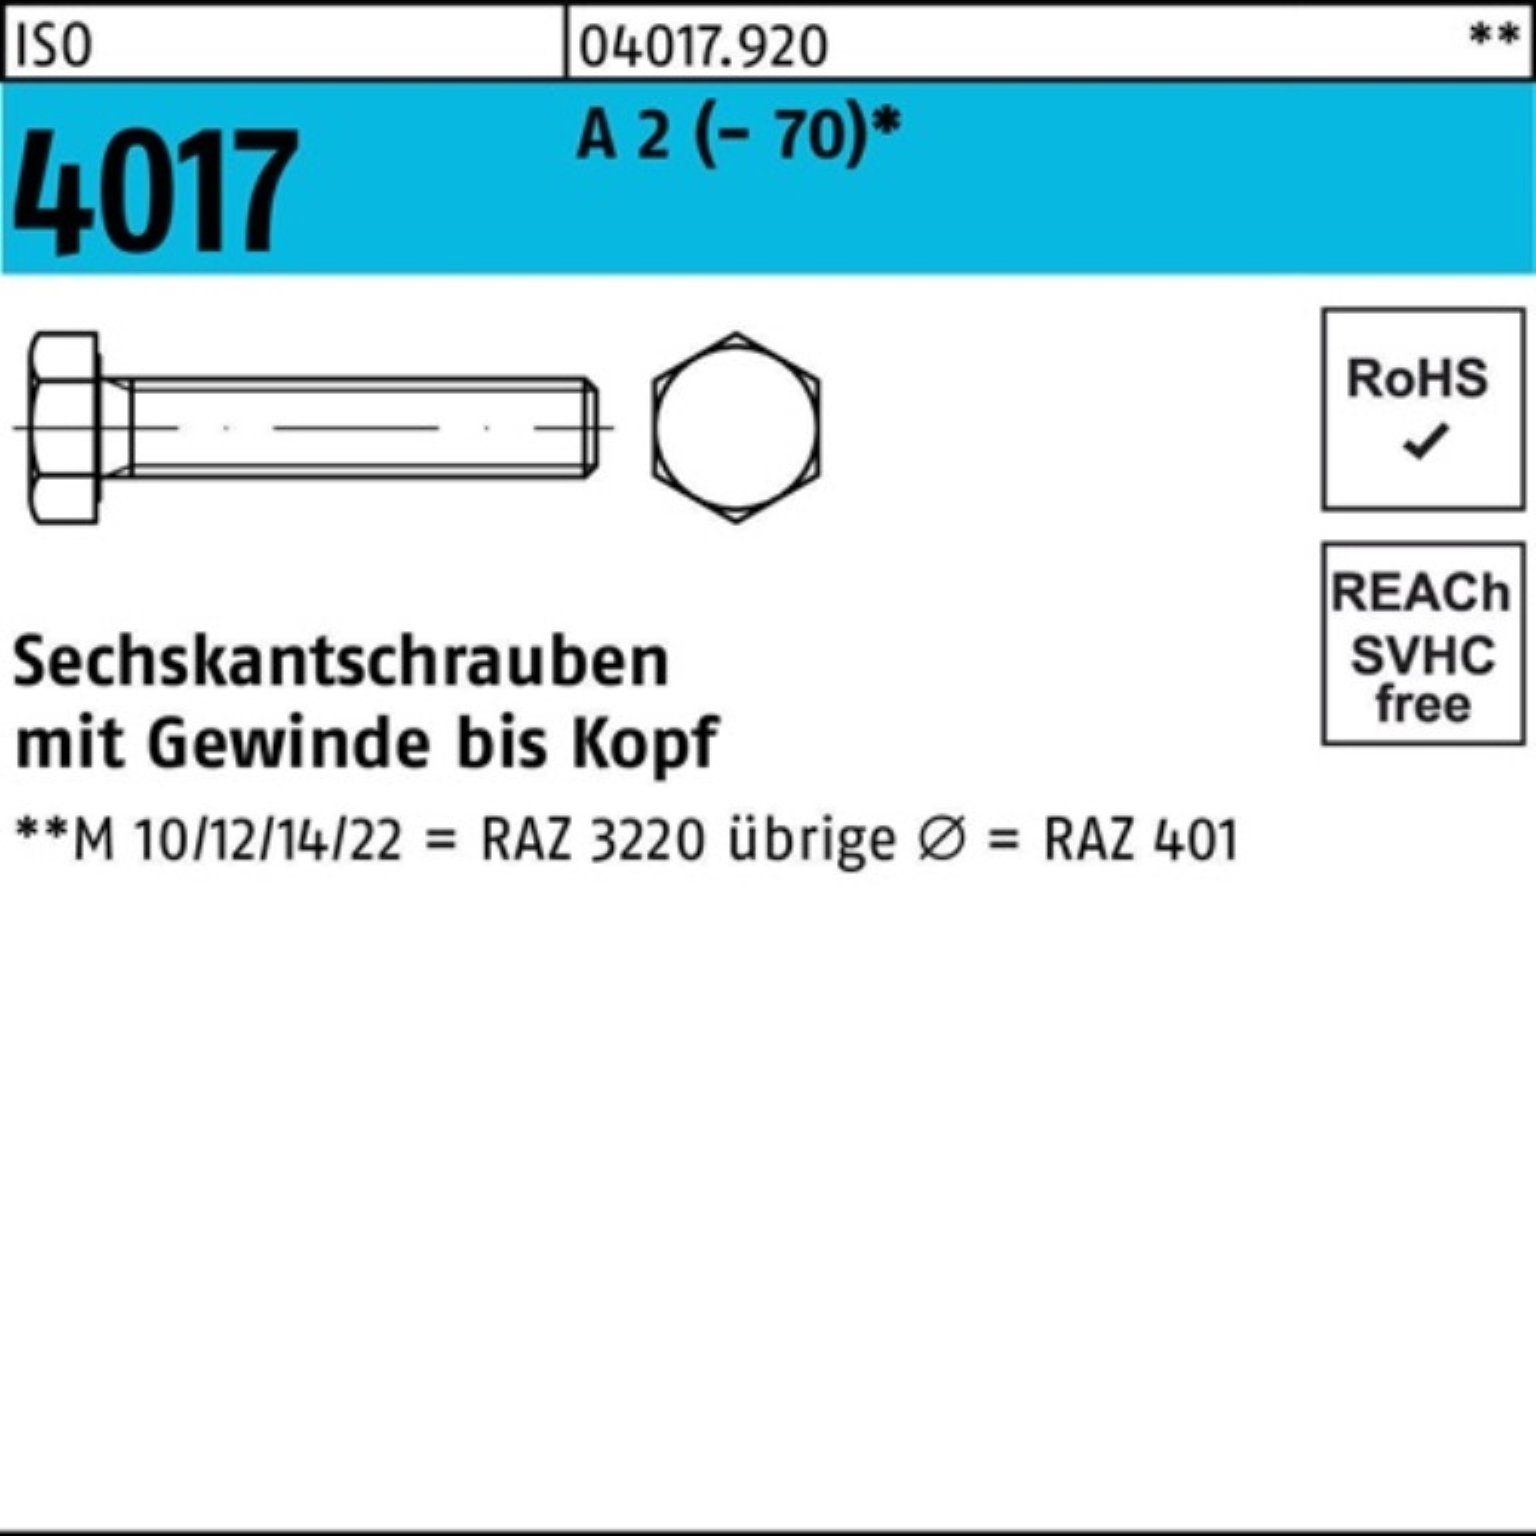 Bufab Sechskantschraube 100er Pack Sechskantschraube ISO 4017 VG M12x 75 A 2 (70) 50 Stück